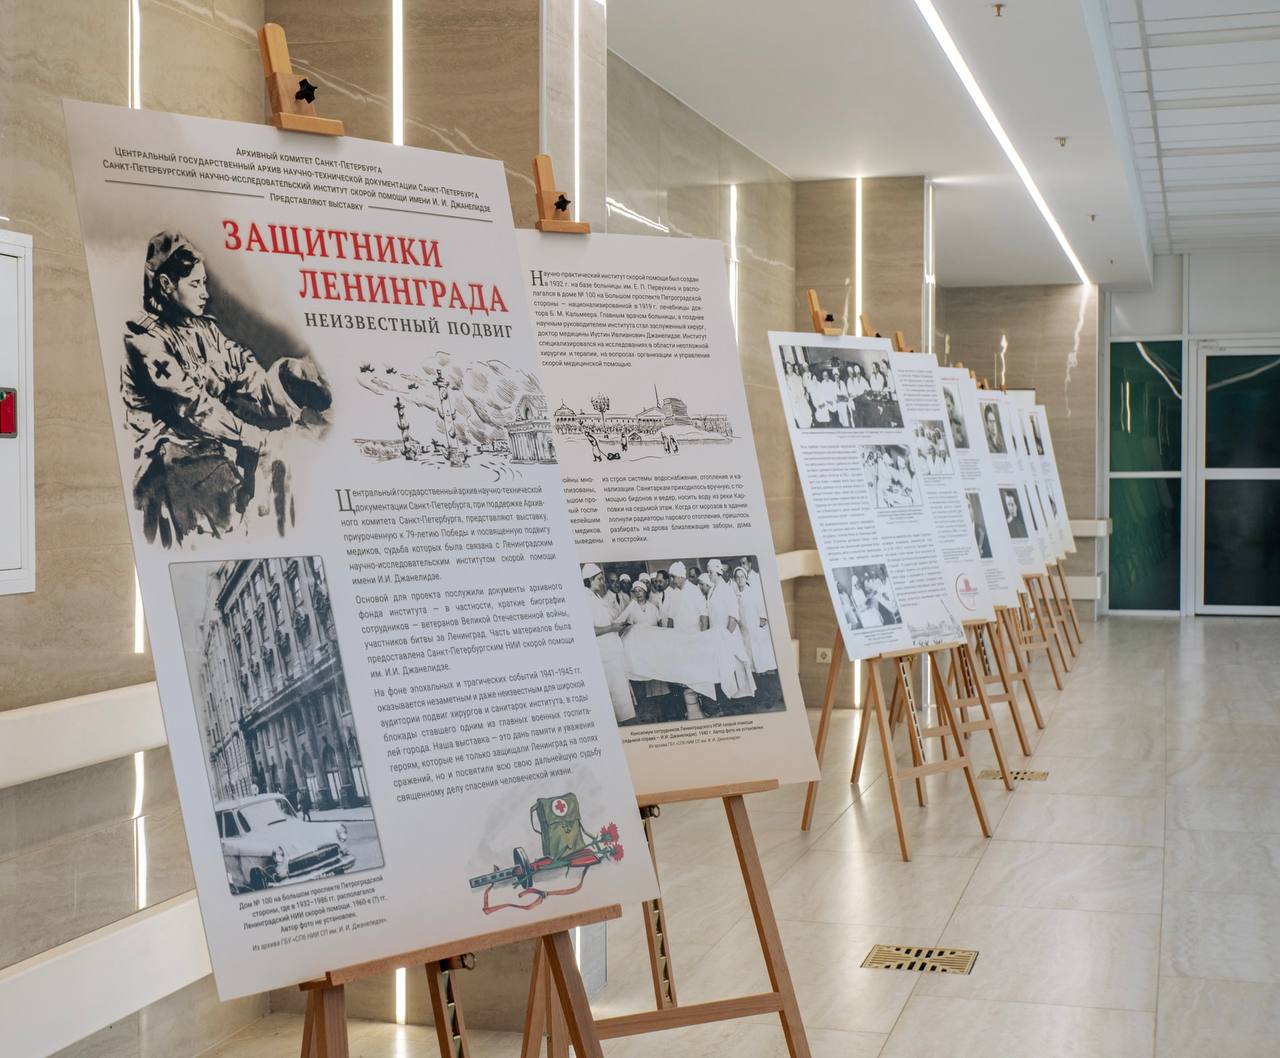 В институте открылась выставка «Неизвестный подвиг. Защитники Ленинграда»